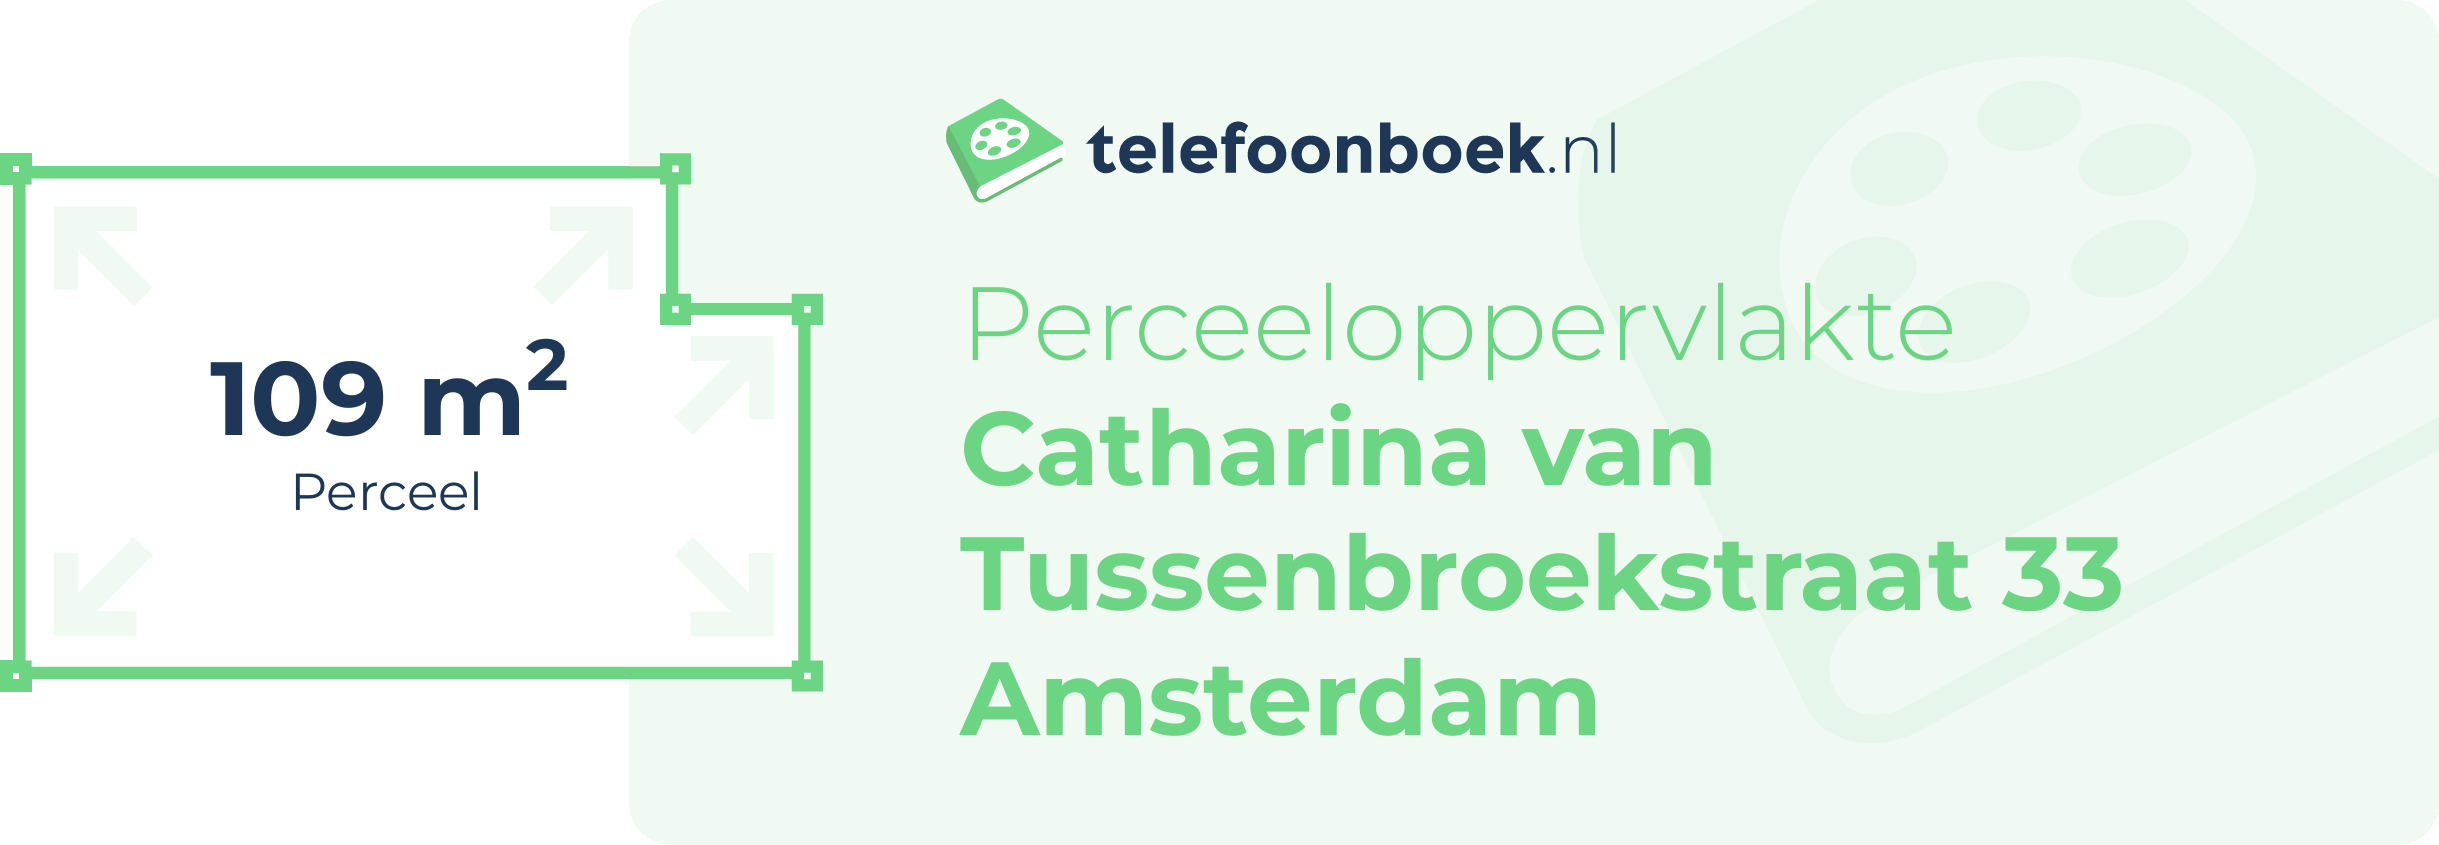 Perceeloppervlakte Catharina Van Tussenbroekstraat 33 Amsterdam